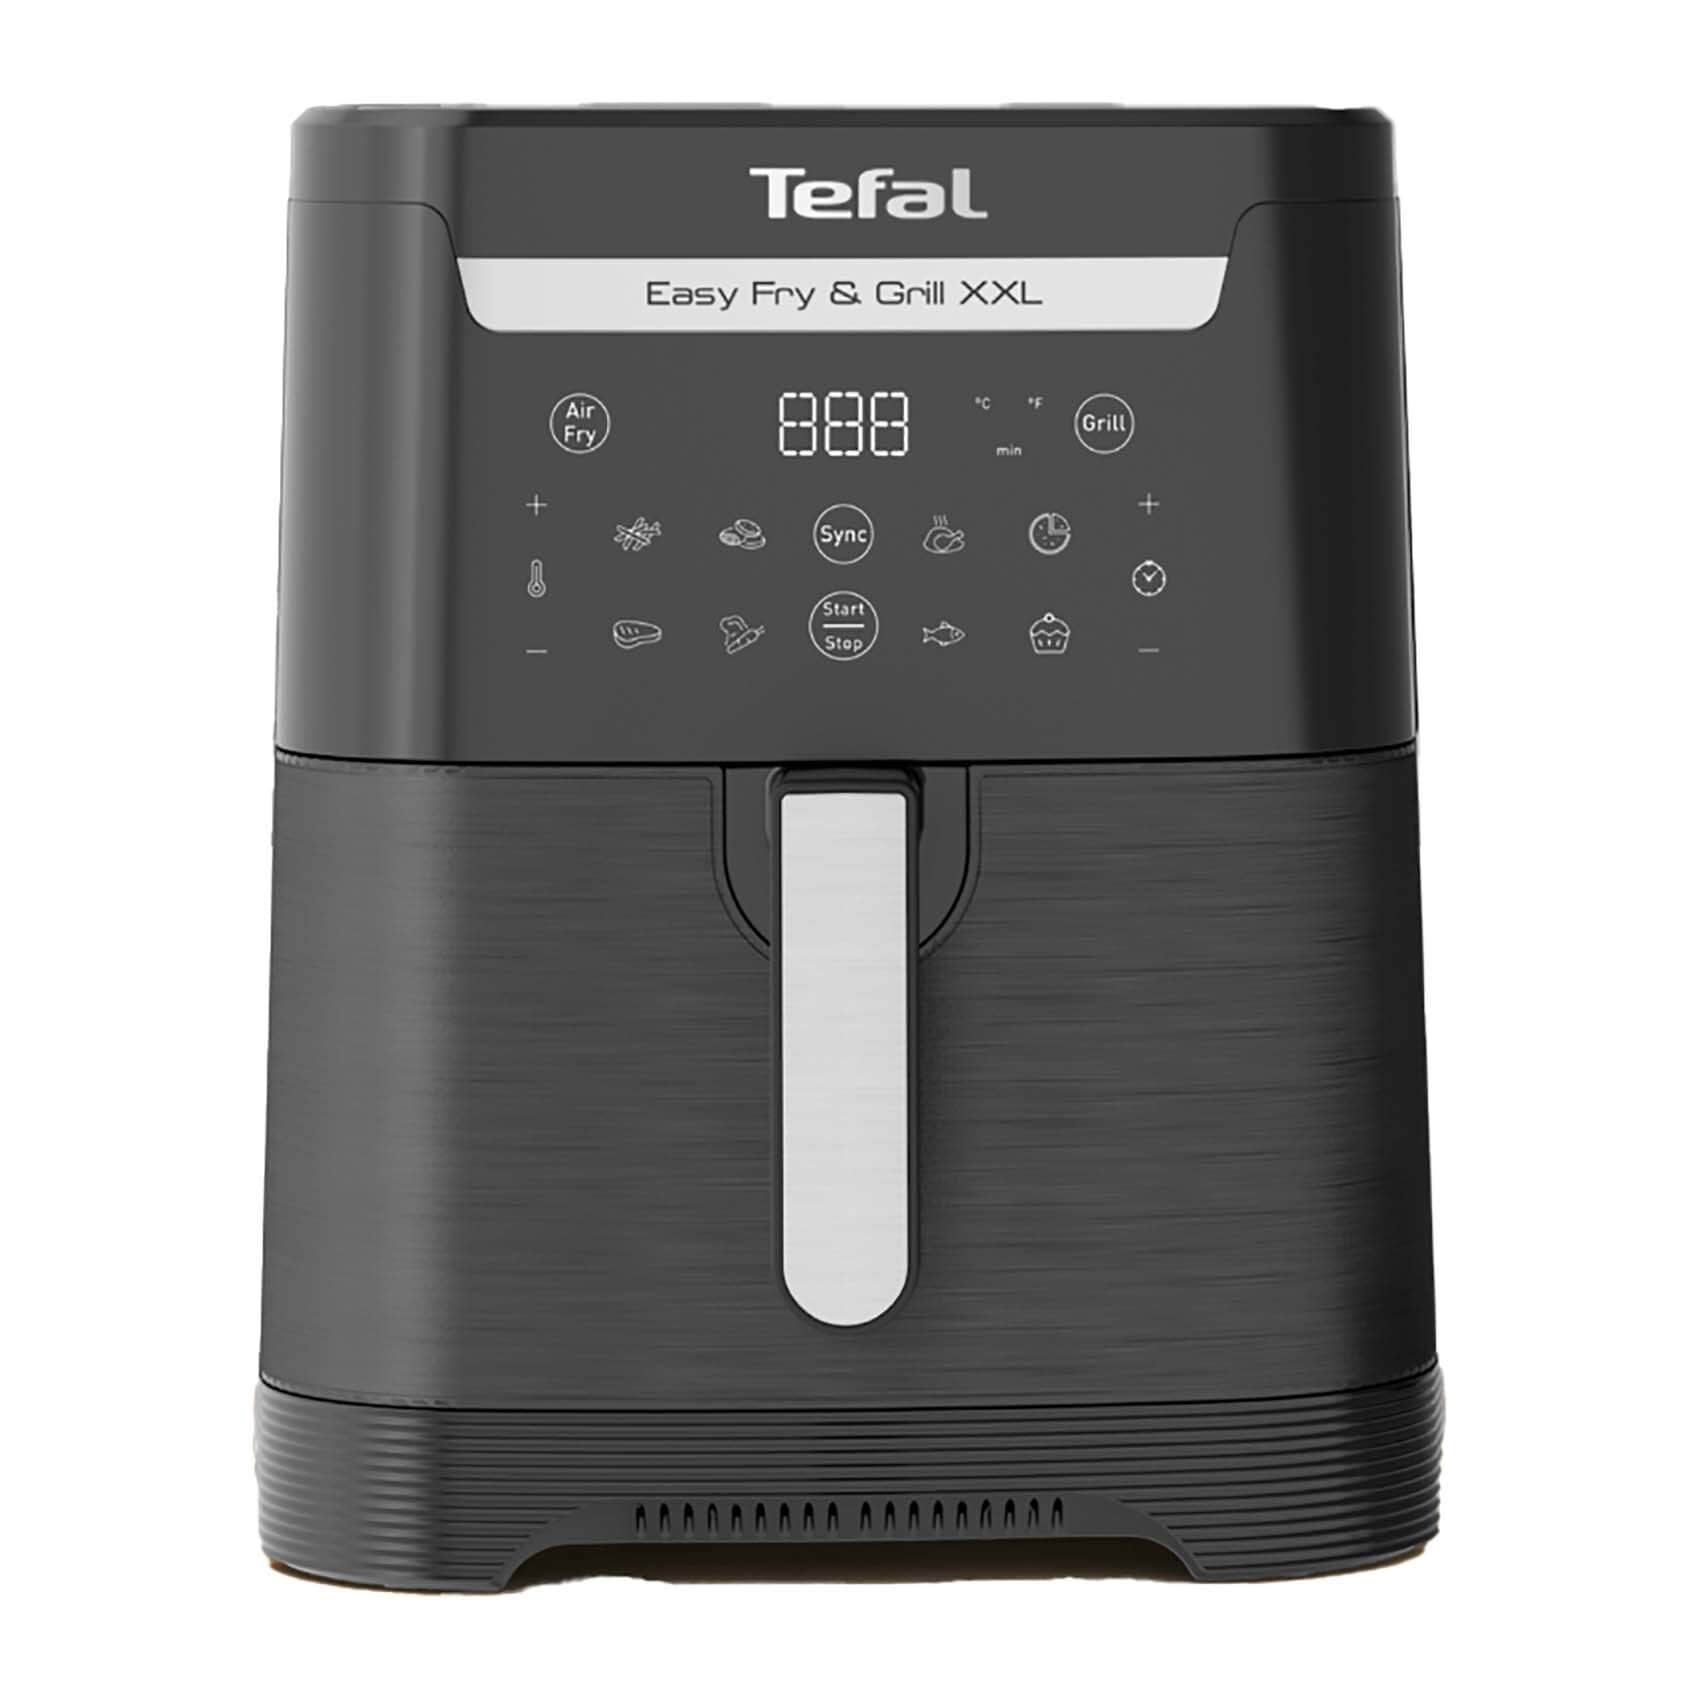 Tefal Fryer Actifry, 1KG, 1400 Watt - FZ710029, Best price in Egypt